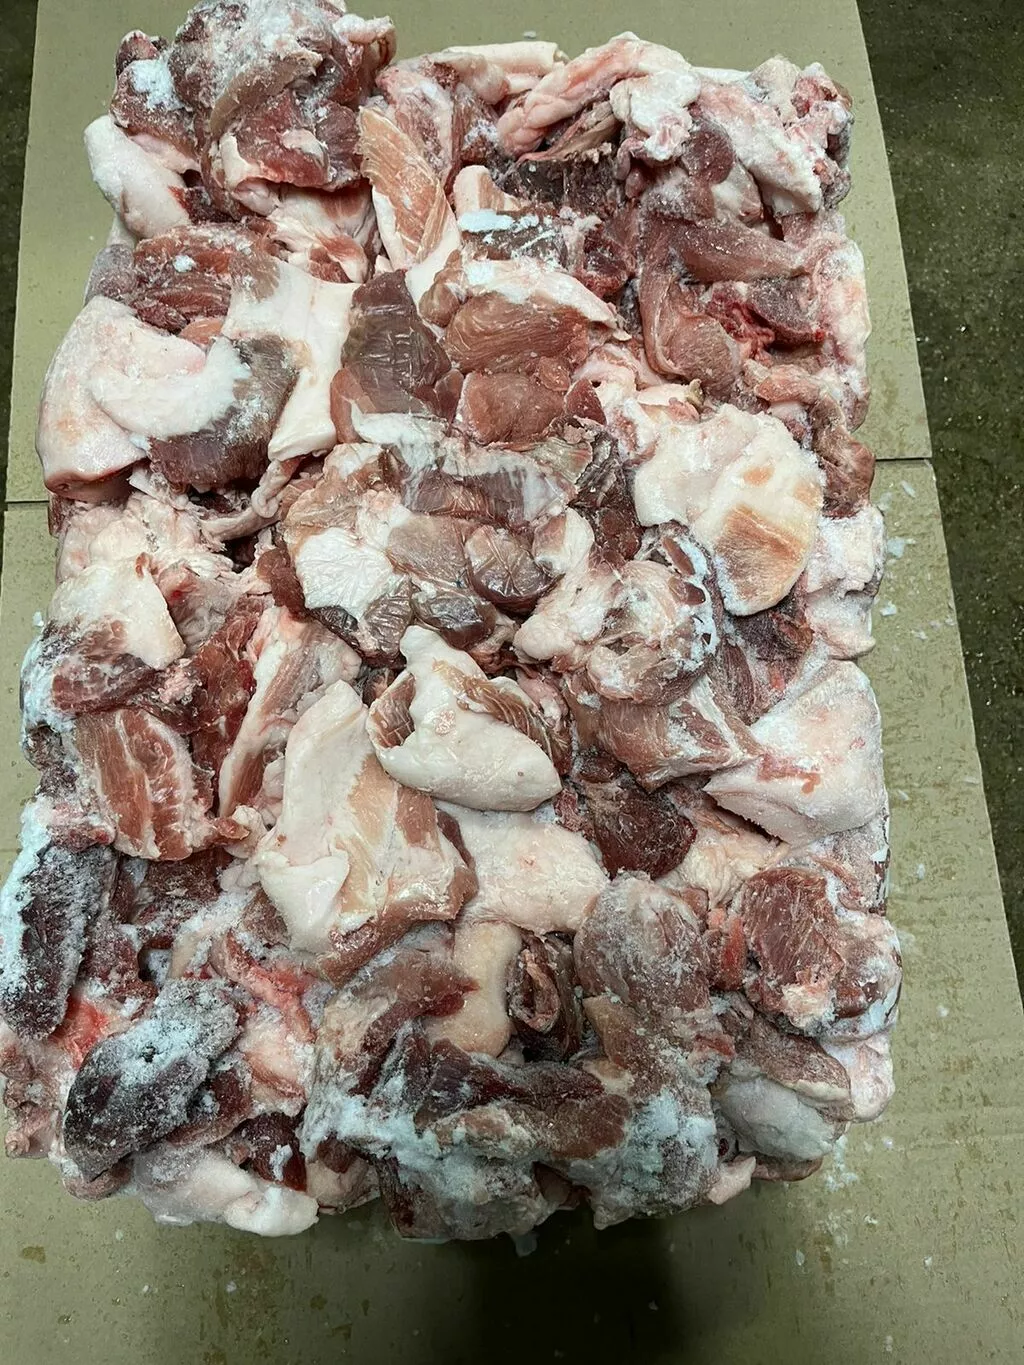 тримминг свиной, котлетное мясо 70/30 в Москве и Московской области